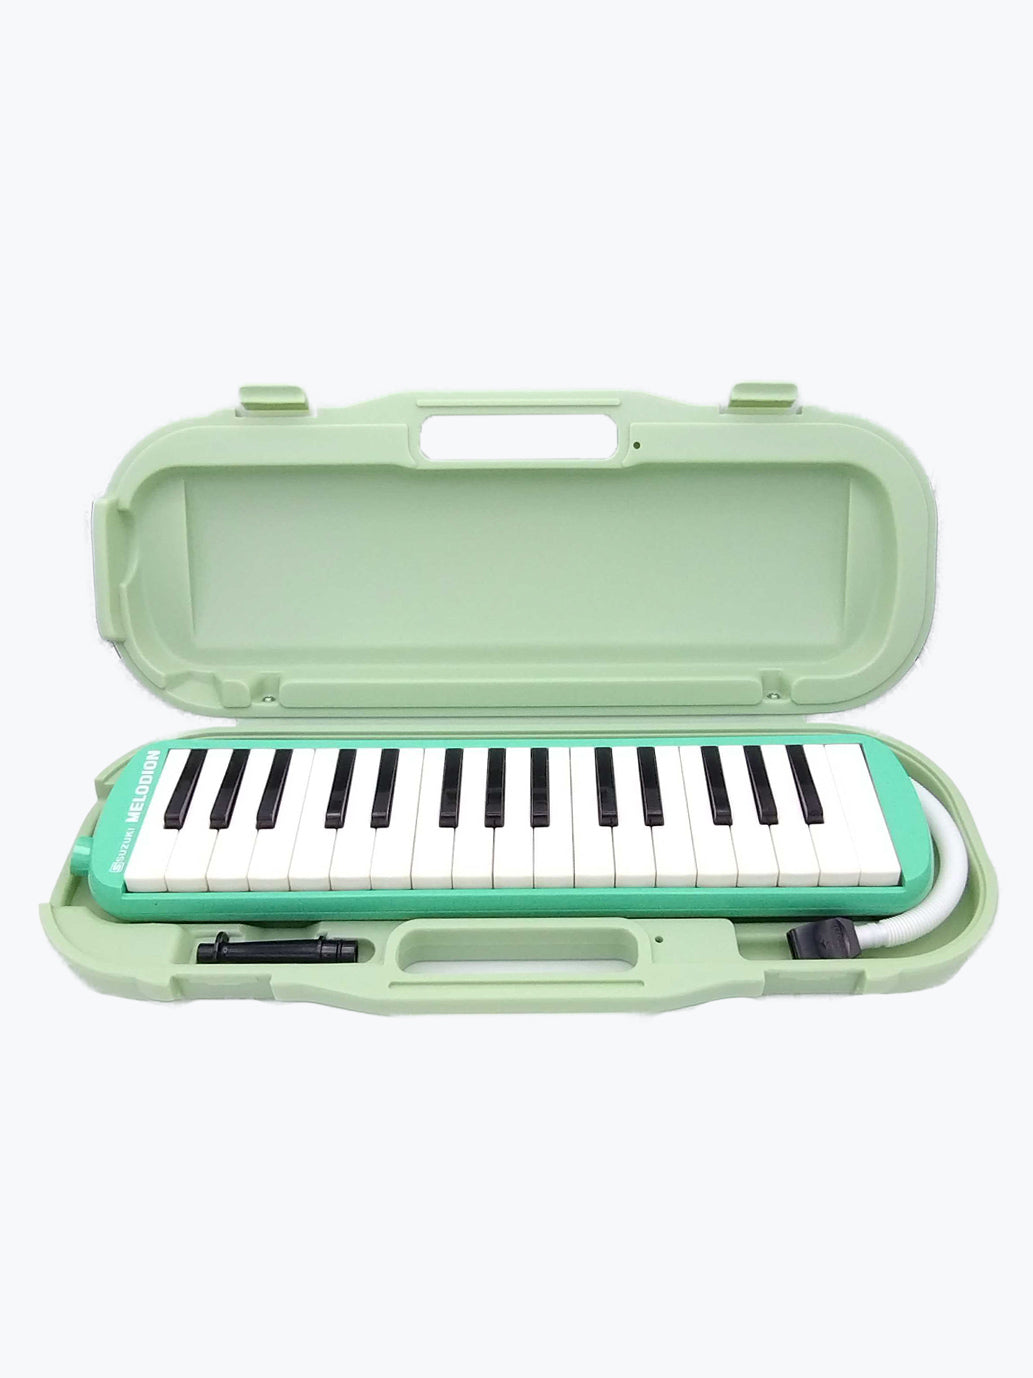 SUZUKI MELODION鍵盤ハーモニカピンク - 鍵盤楽器